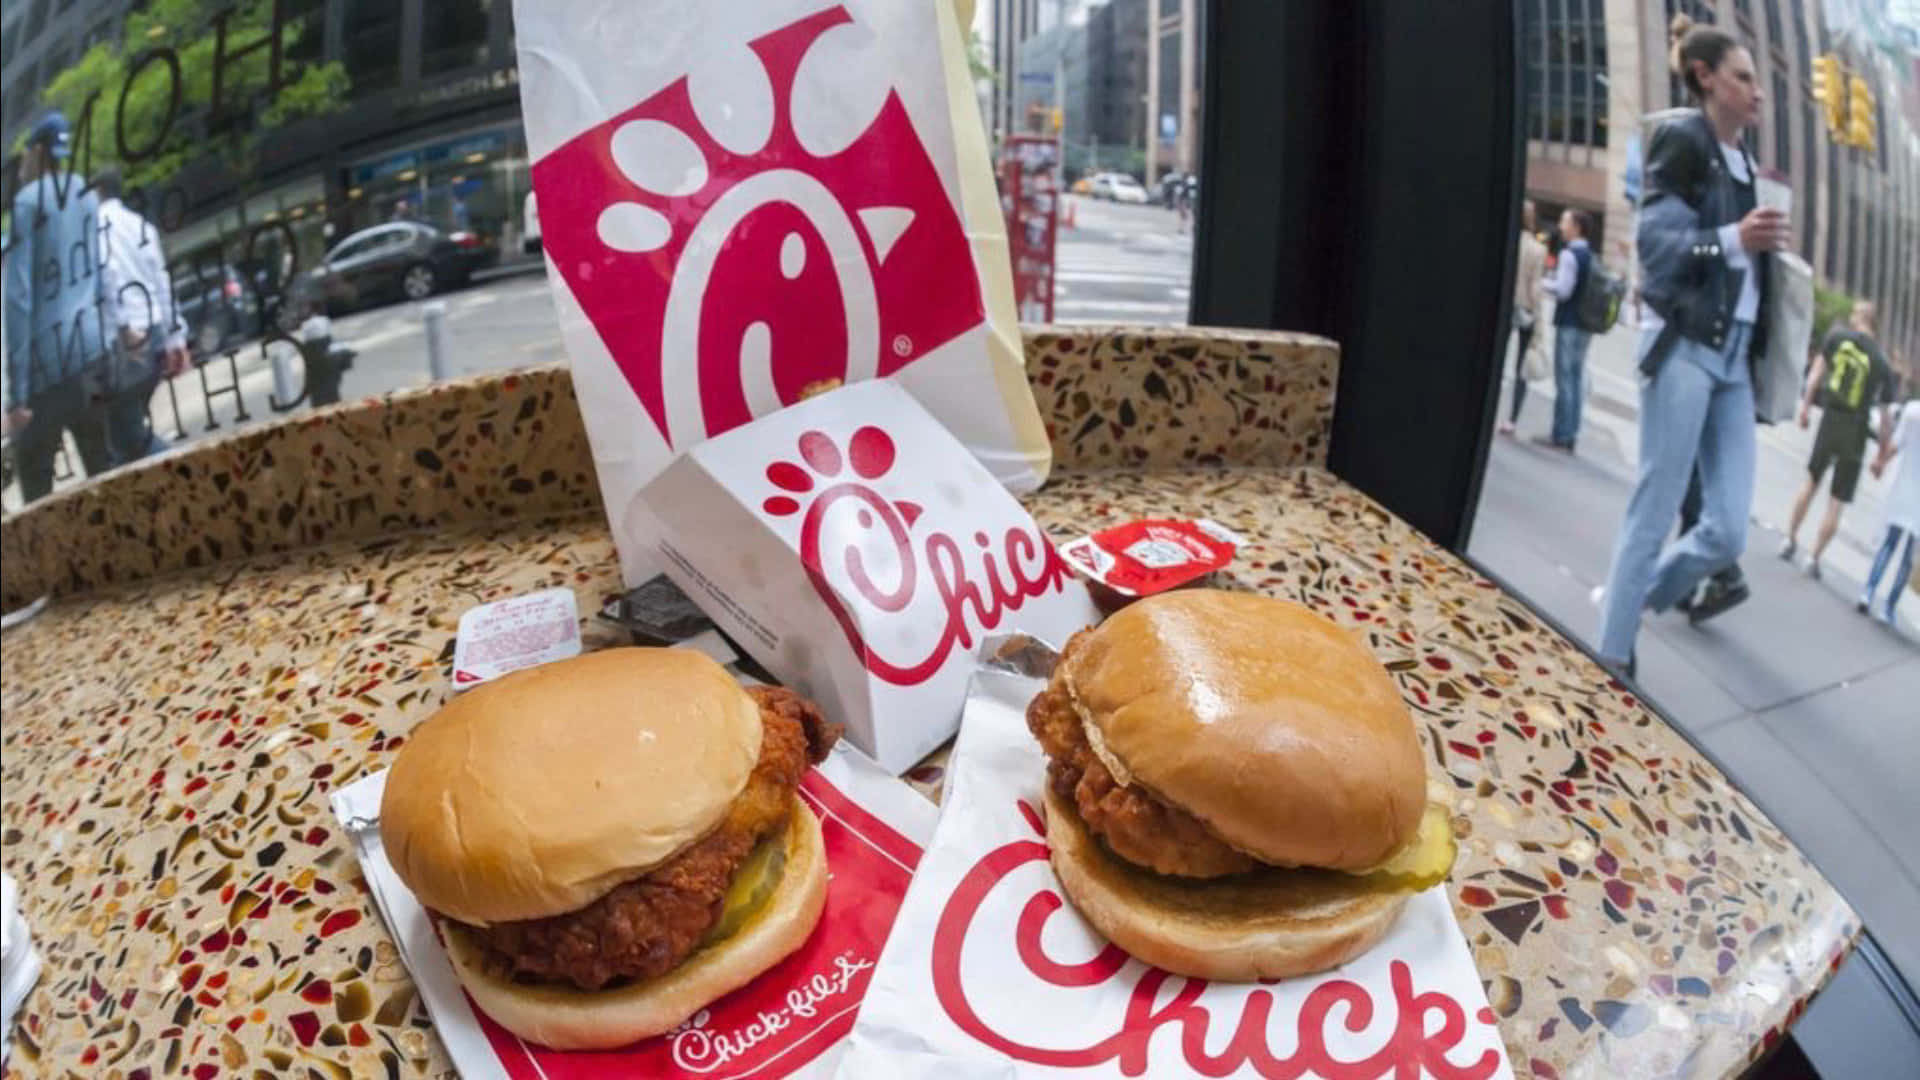 Chickfil-a Ist Eine Fast-food-kette, Die Sich In New York City Ausbreitet.